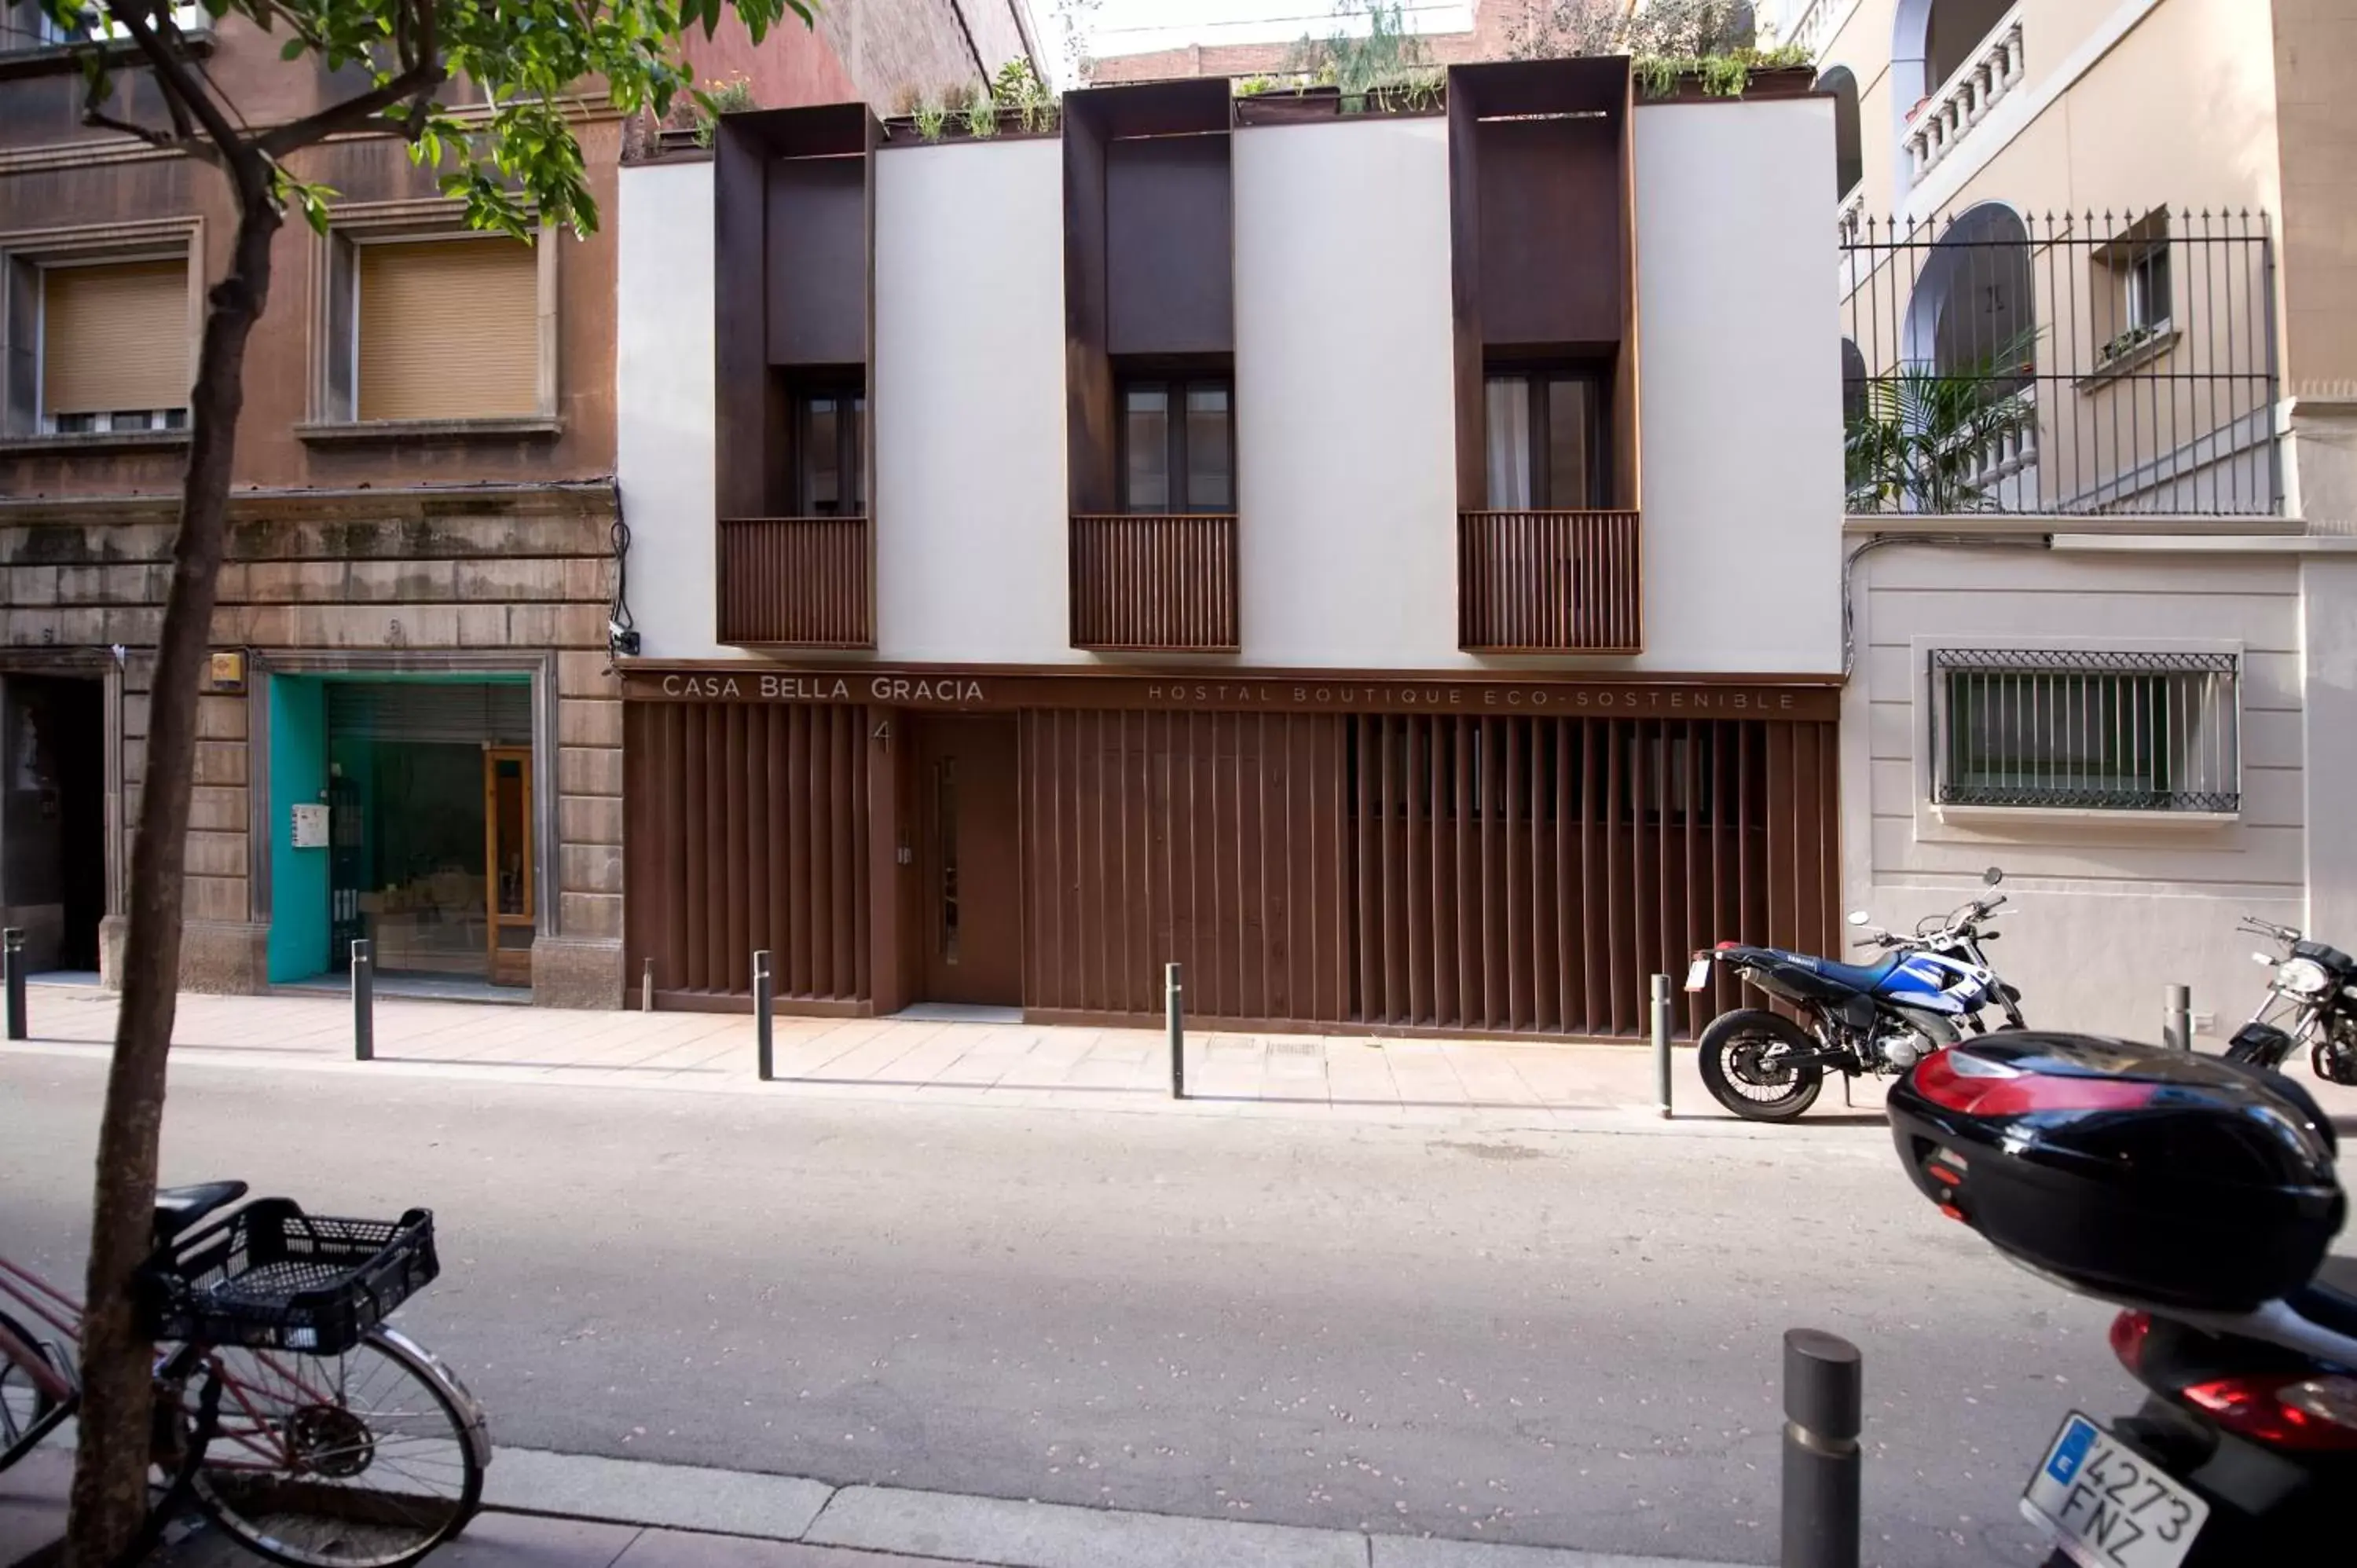 Facade/entrance, Property Building in Casa Bella Gracia by Aspasios